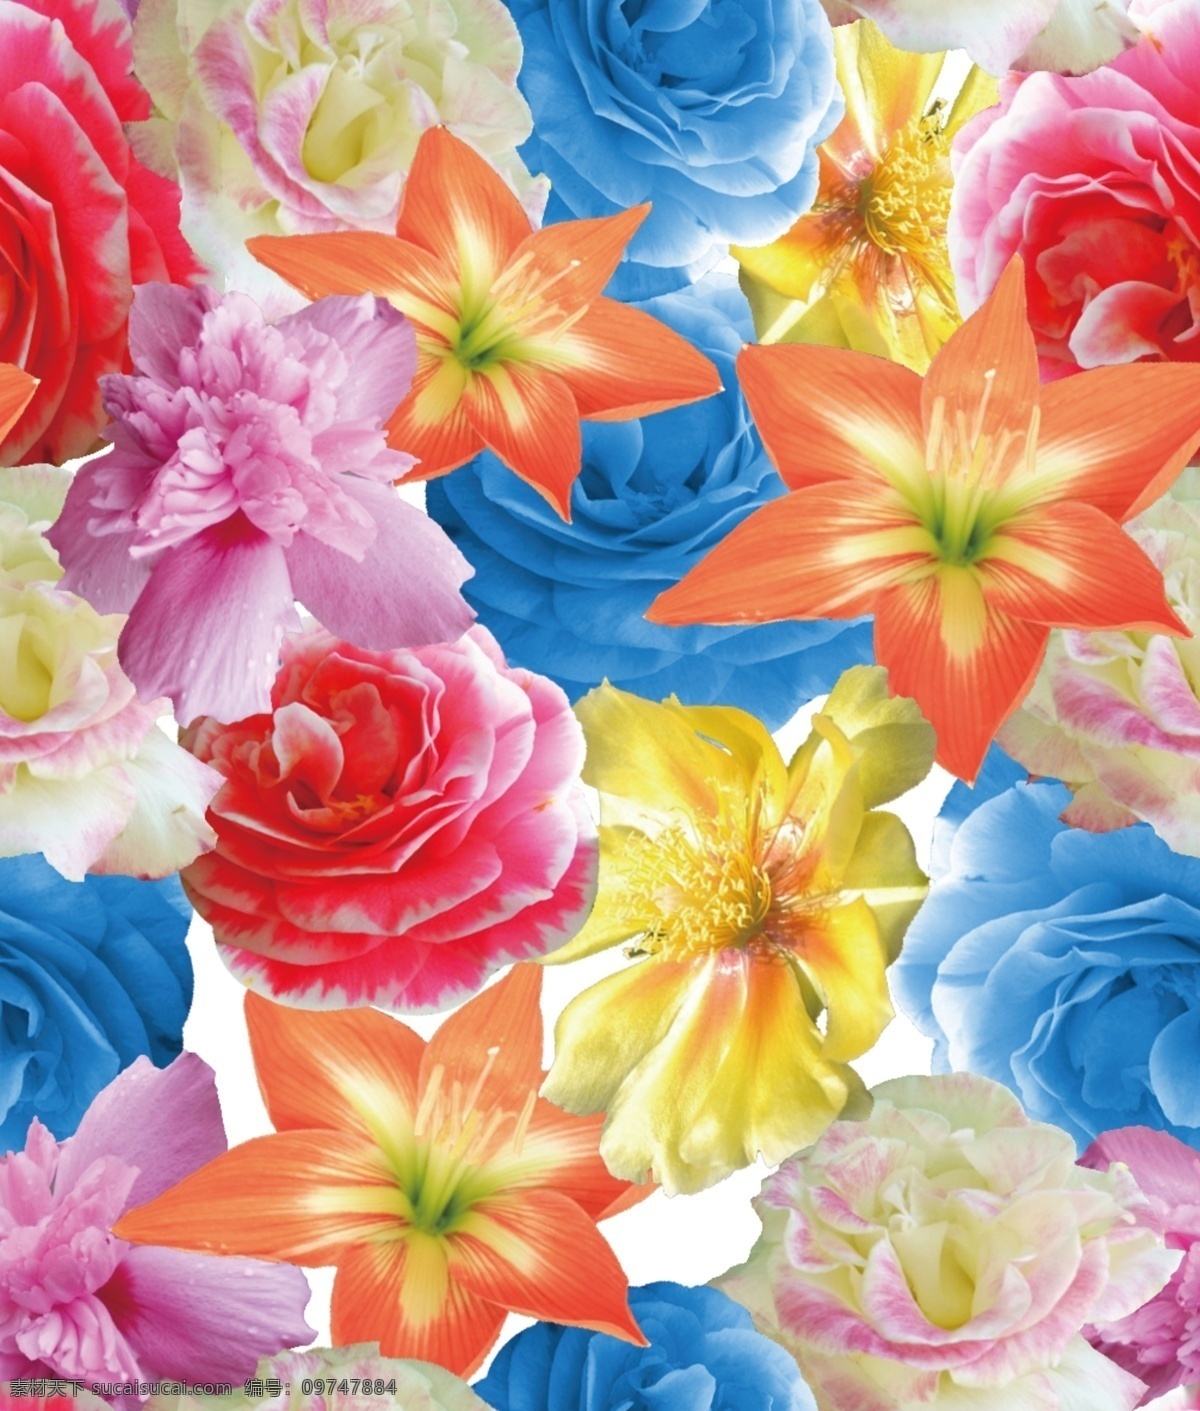 彩色大花朵 印花 牡丹花 循环花 素材设计 photoshop psd层素材 分层素材 作品 分层